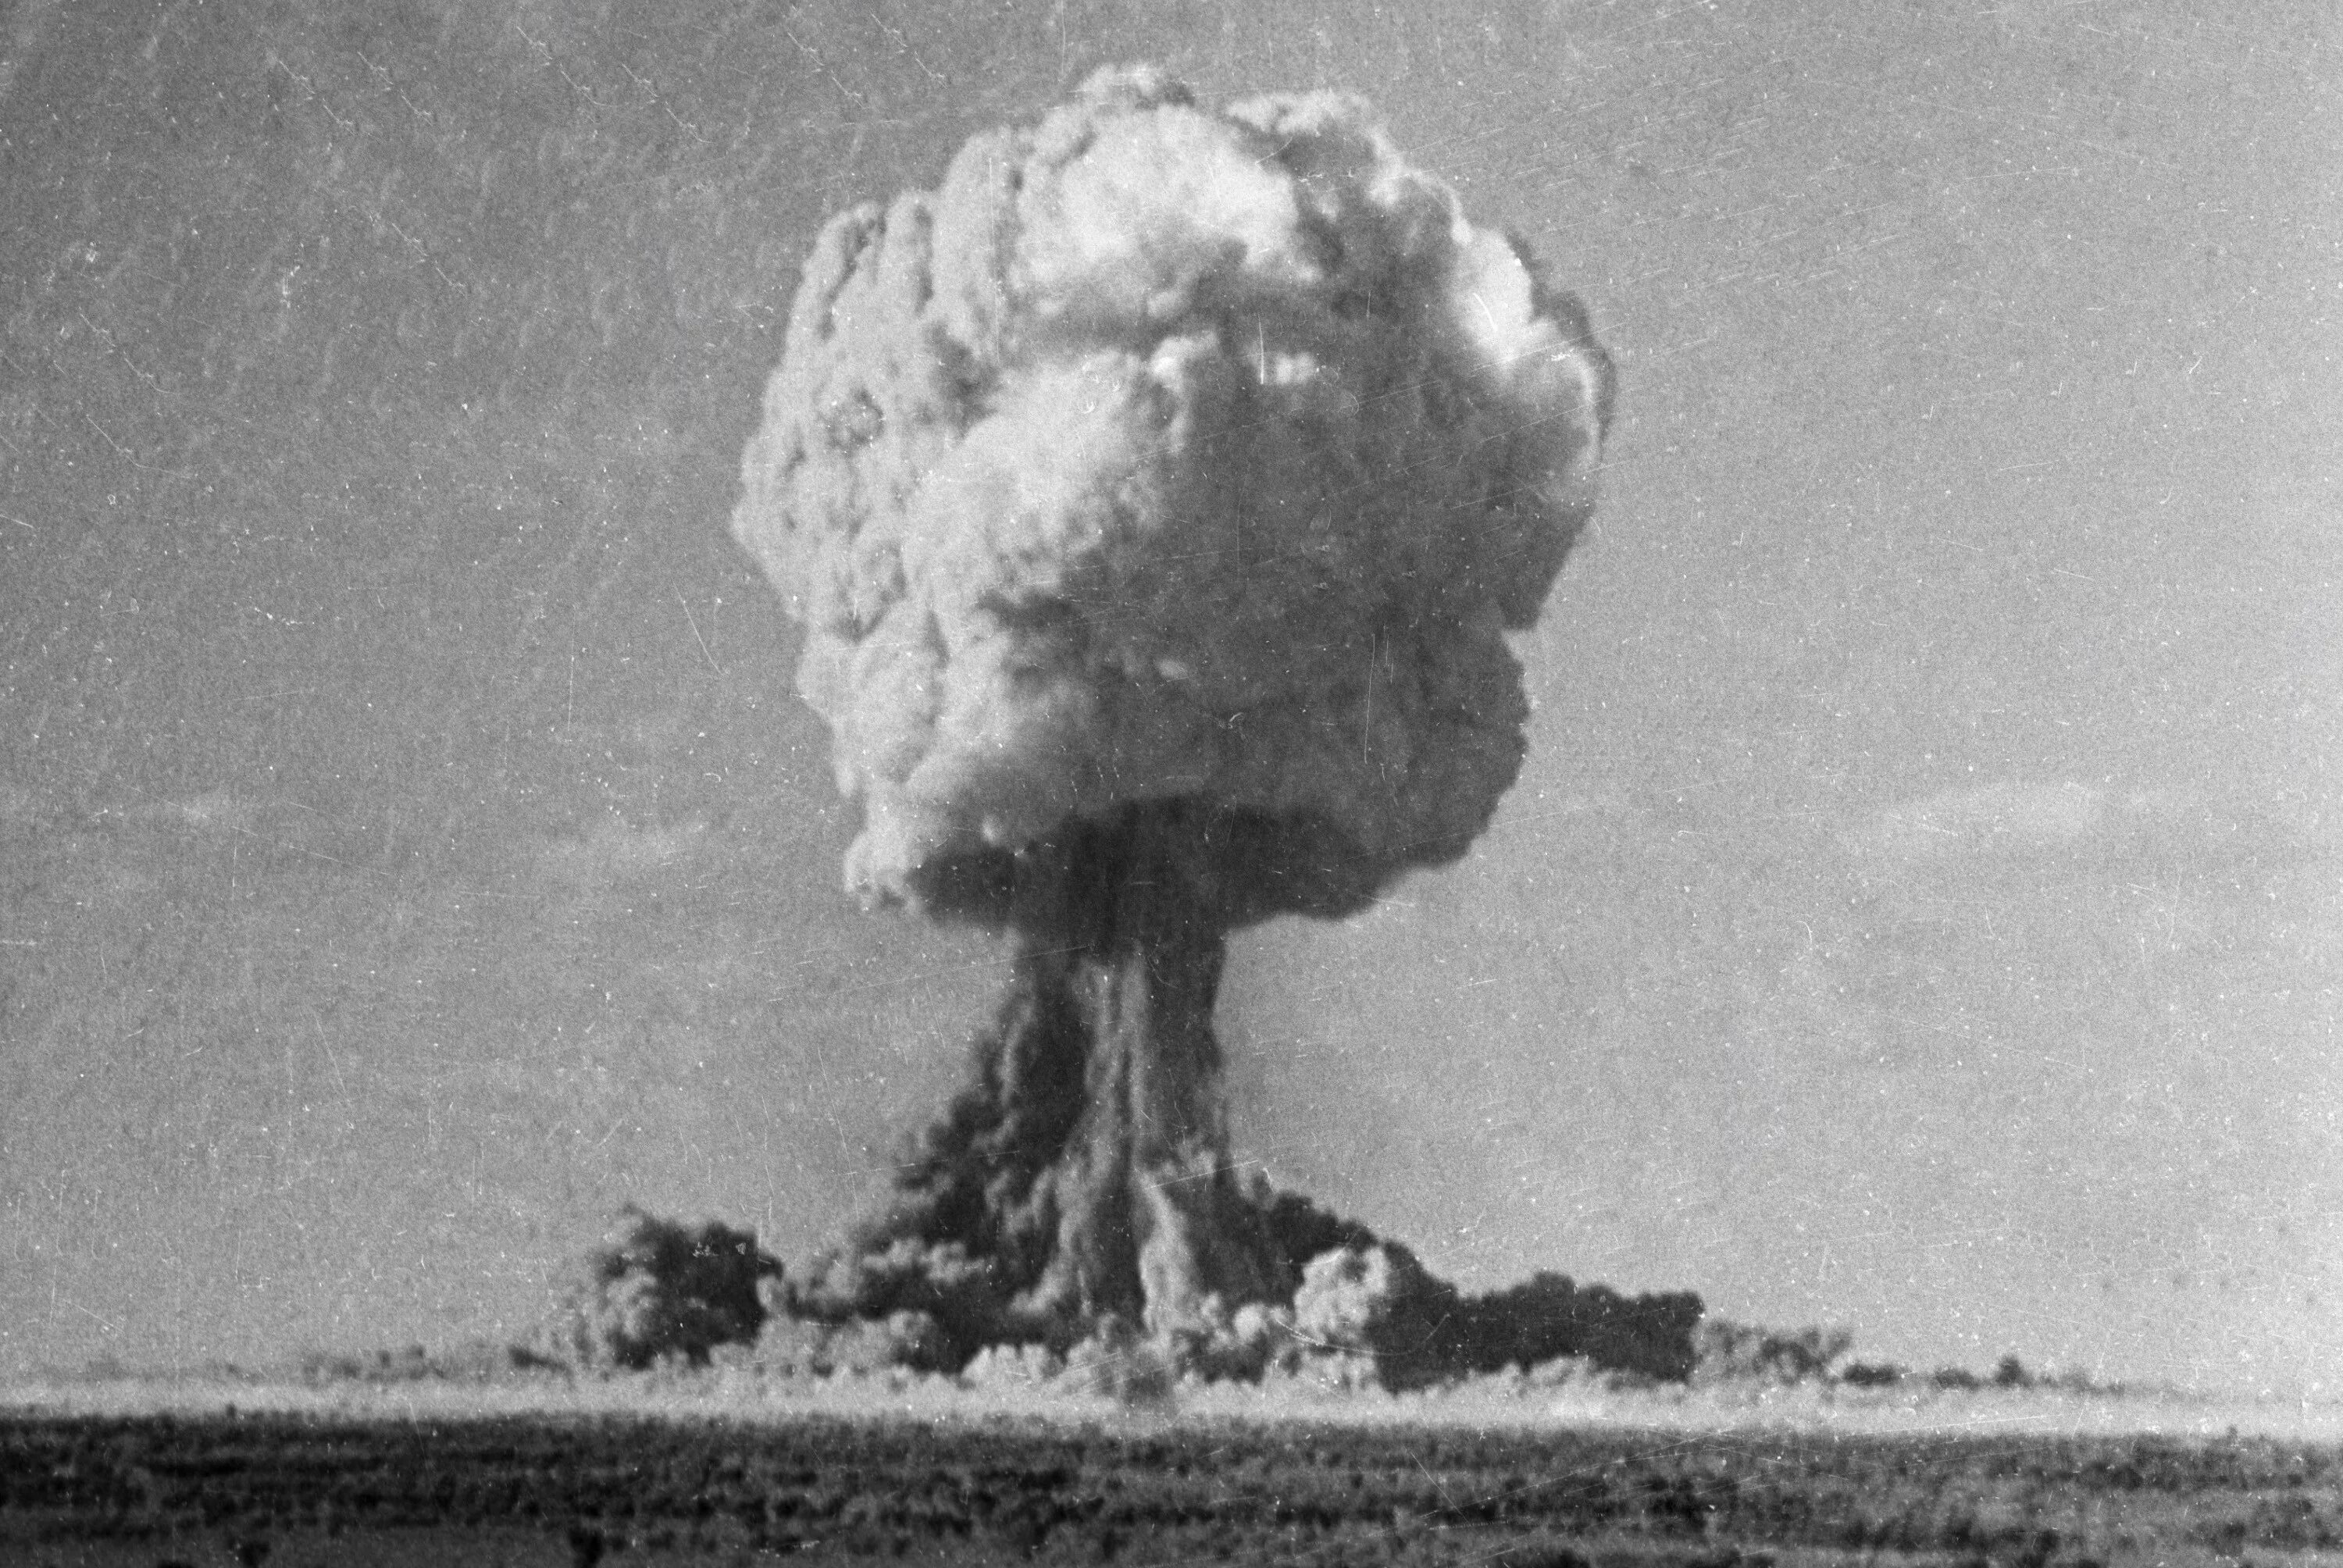 Ссср испытание. Испытание атомной бомбы в СССР. 29 Августа 1949 г испытание первой атомной бомбы в СССР РДС-1. Атомная бомба РДС-1 взрыв. Испытание первой атомной бомбы в СССР. РДС-1.